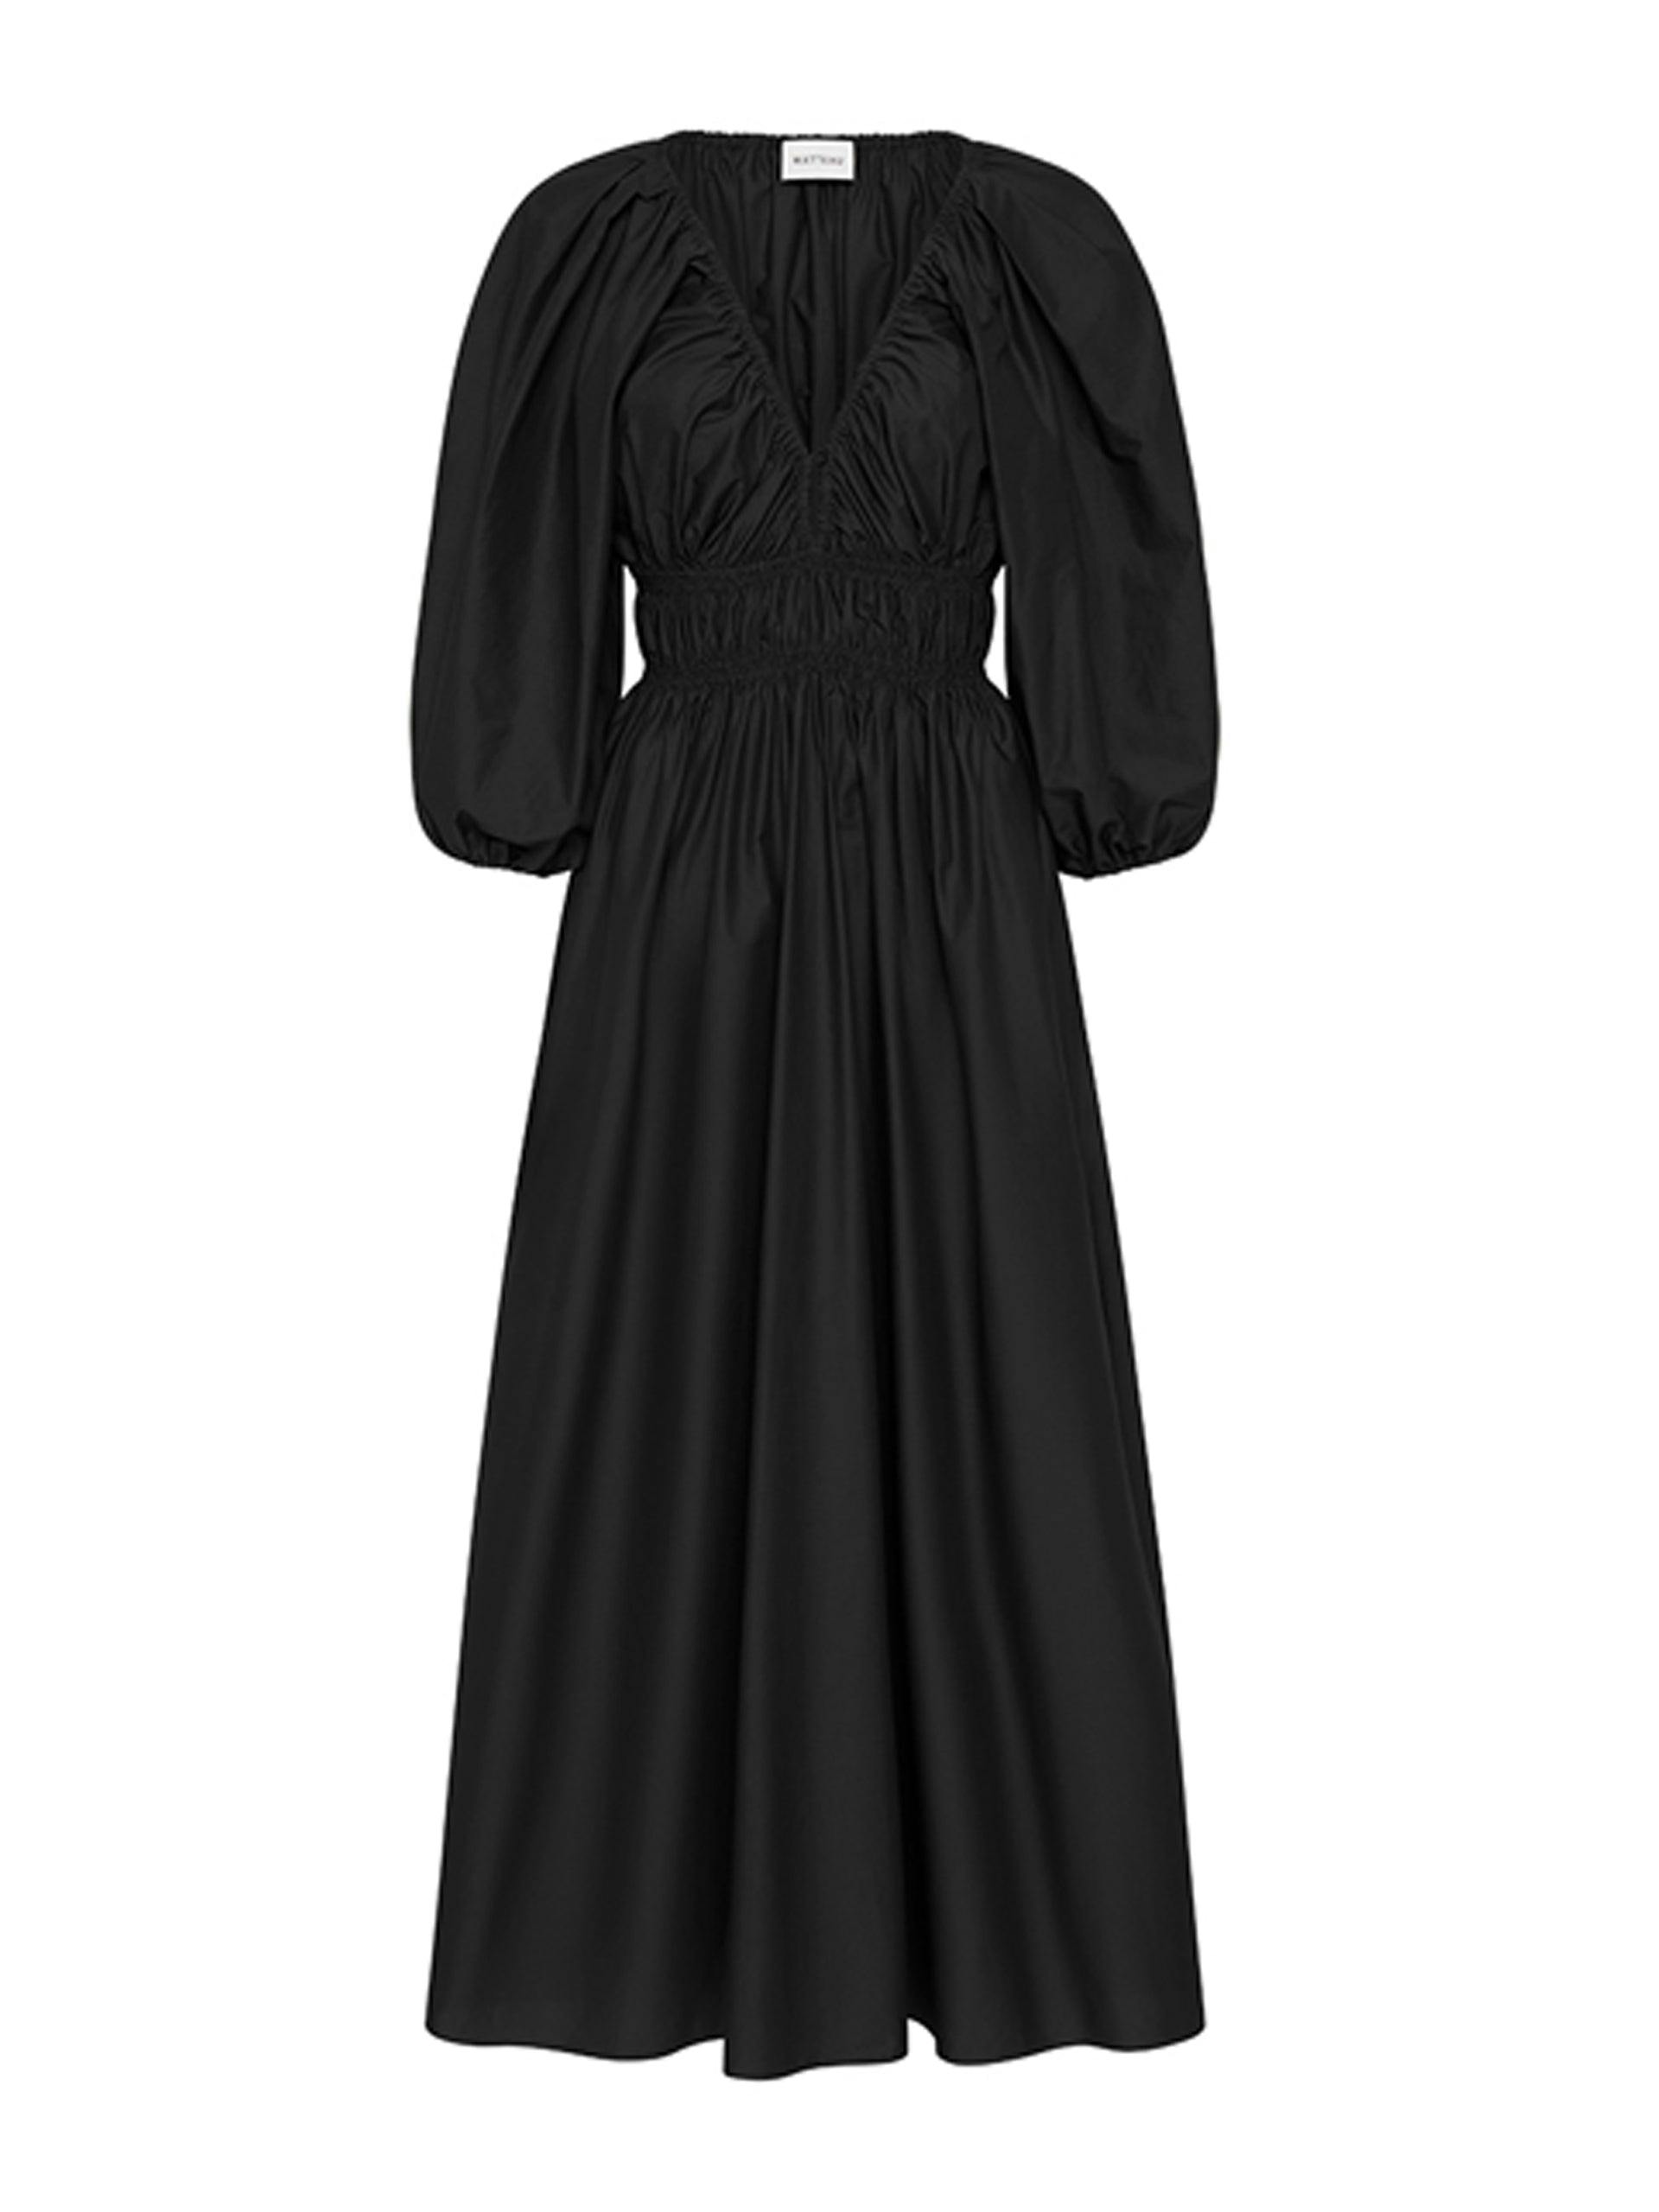 Black shirred plunge button dress